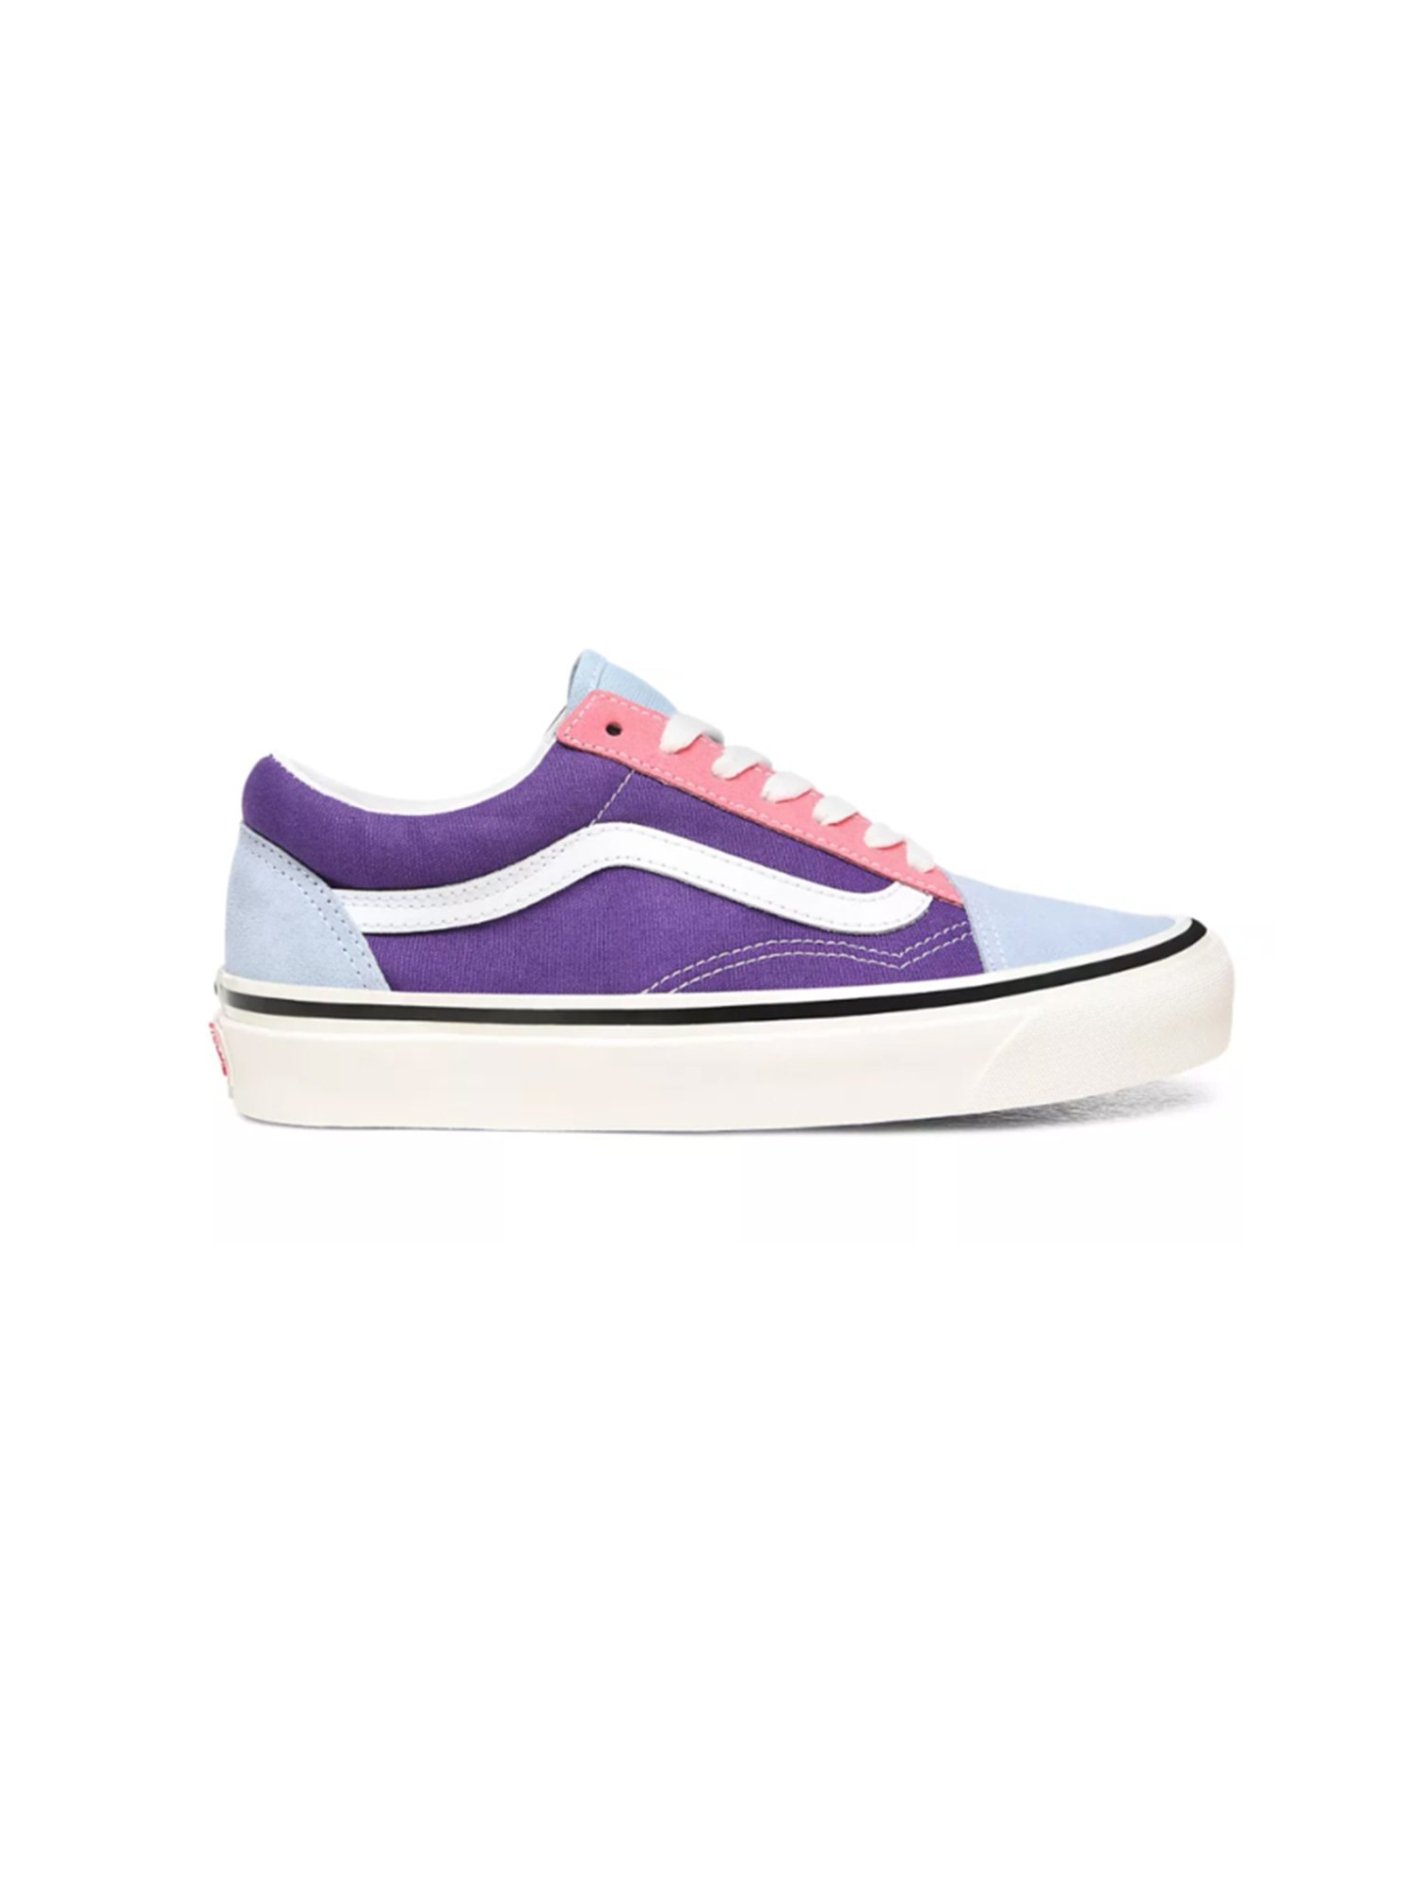 Vans Anaheim Factory Skool 36 DX Shoes Og light blue/Og purple/Og pink – WORMHOLE STORE